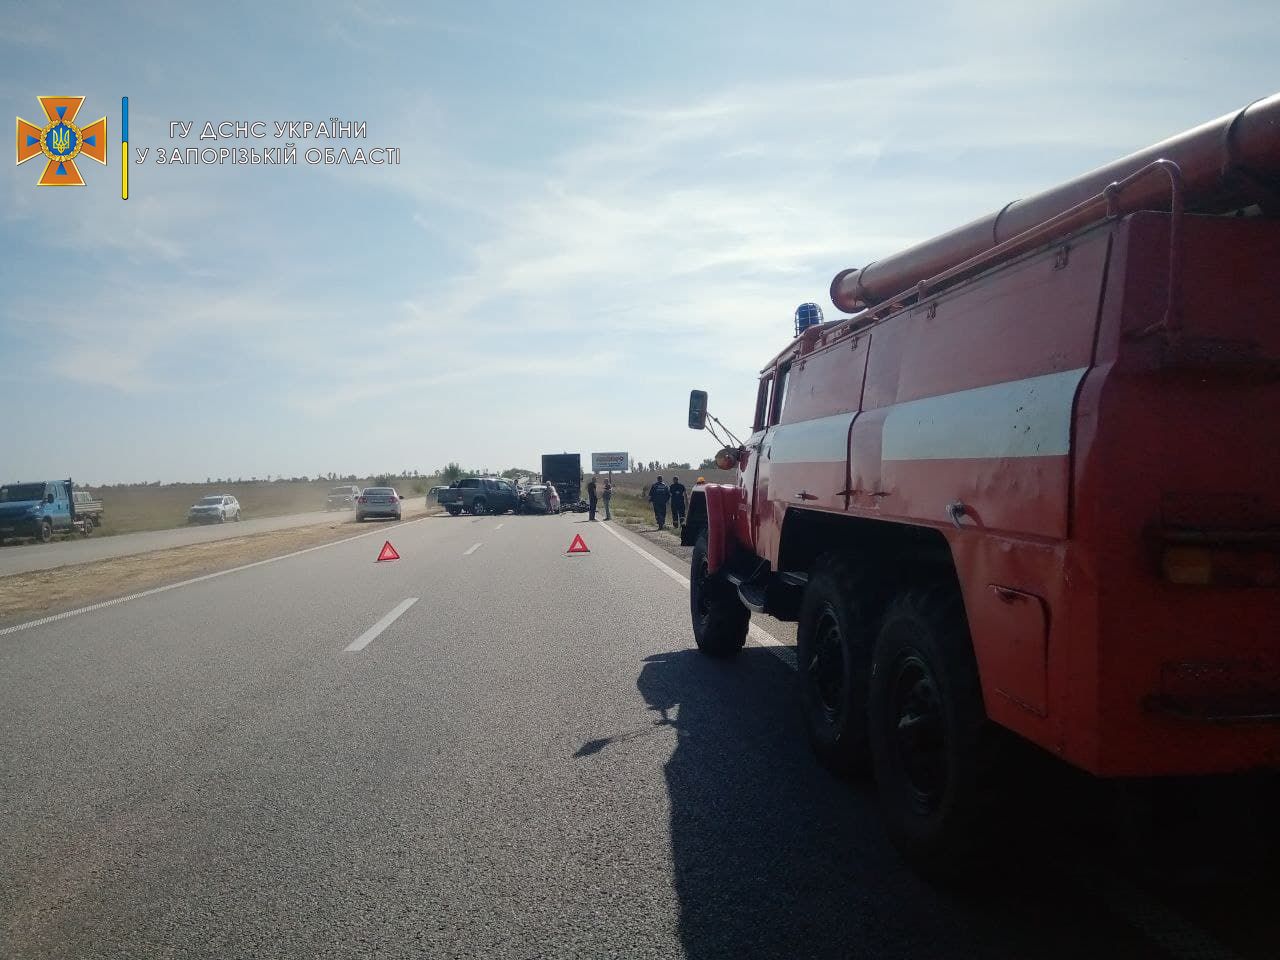 Сразу 6 транспортных средств: в сети появились ФОТО с места массовой аварии на запорожской трассе